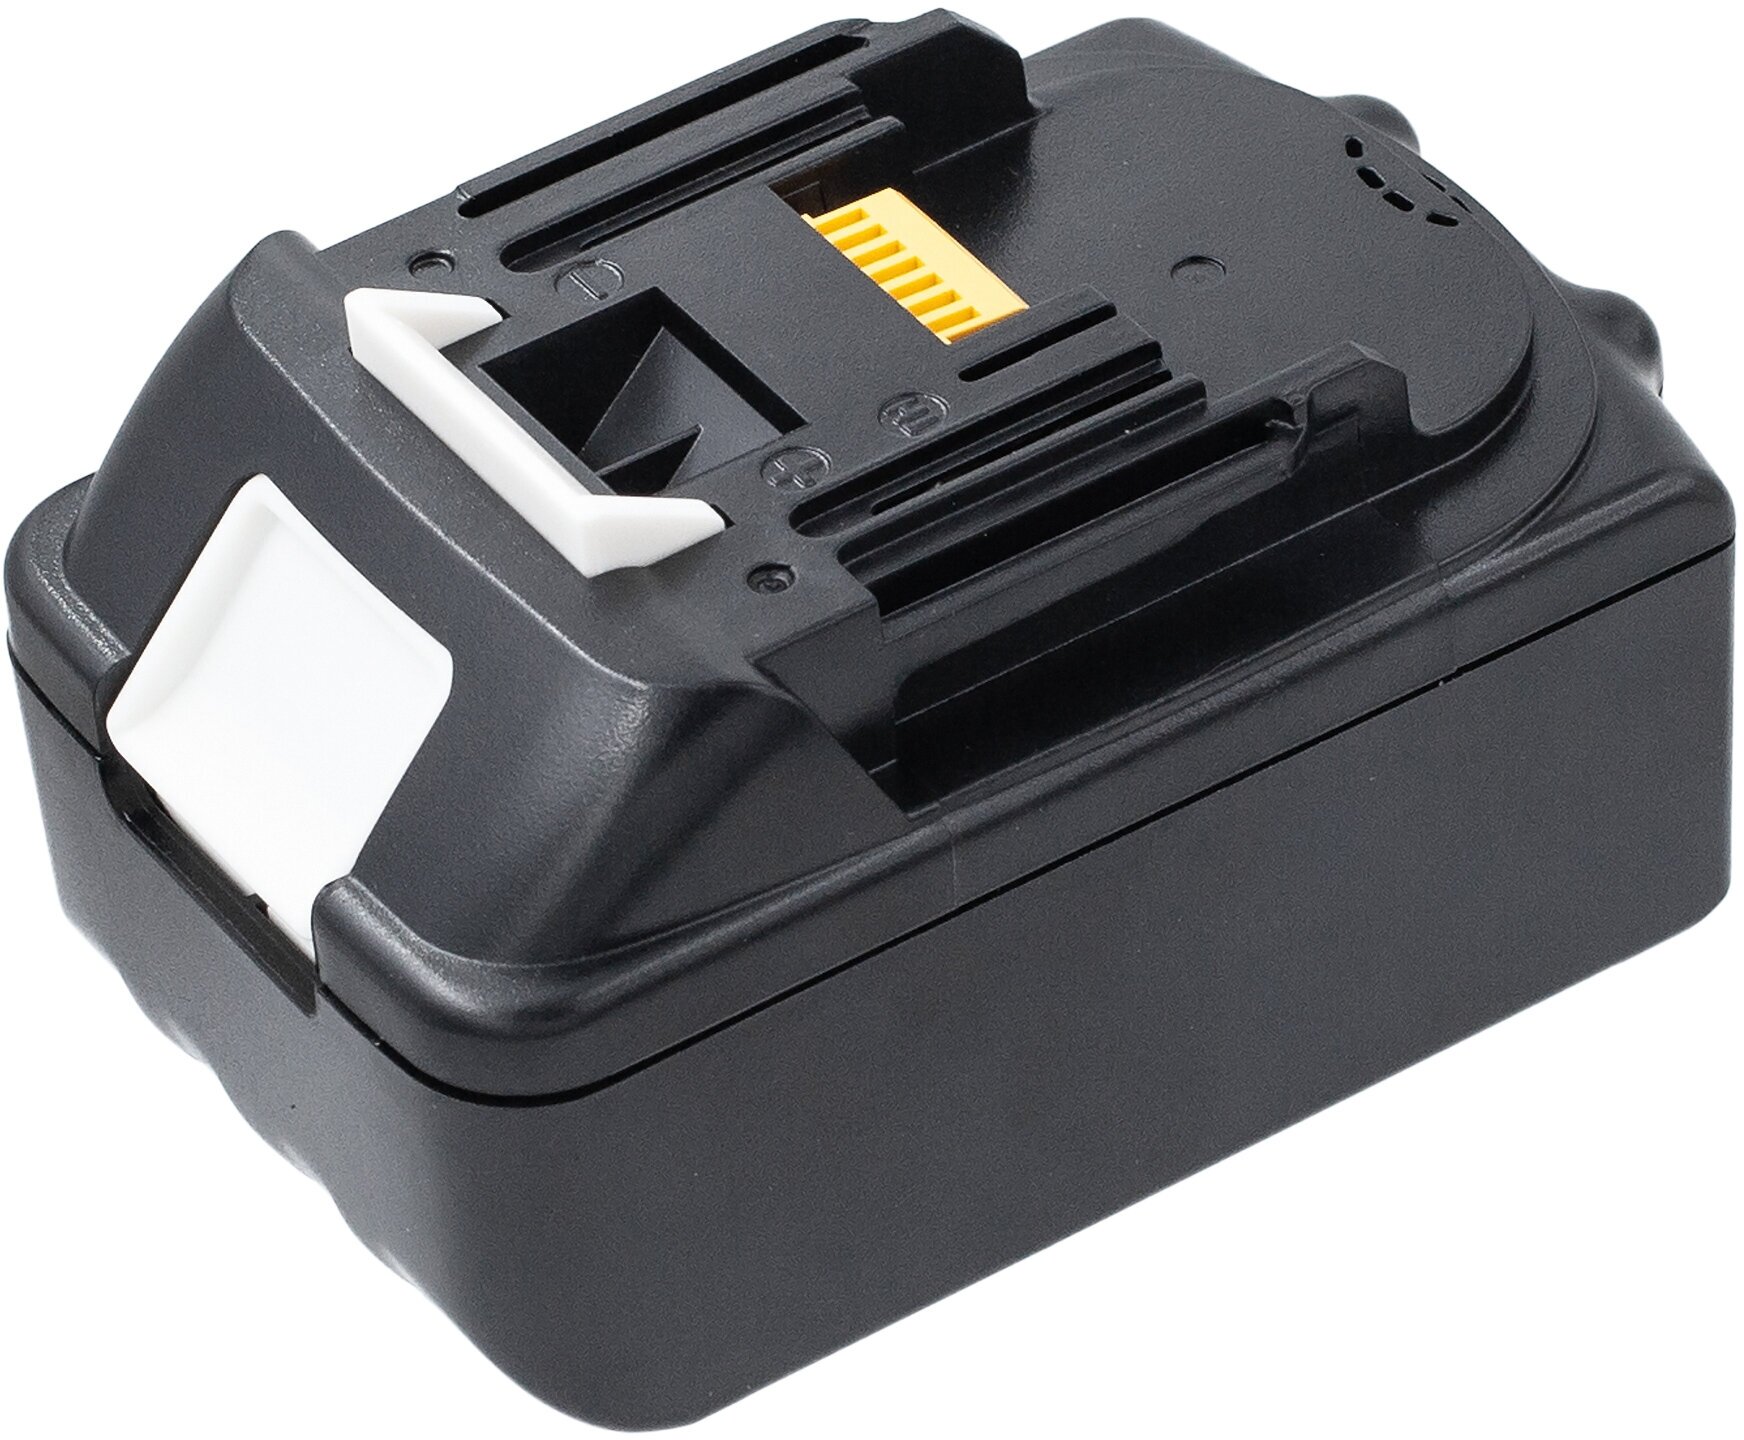 Аккумулятор для шуруповерта Makita BL1830b / BL1860b / BL1815n - 6000mAh для серий 18V